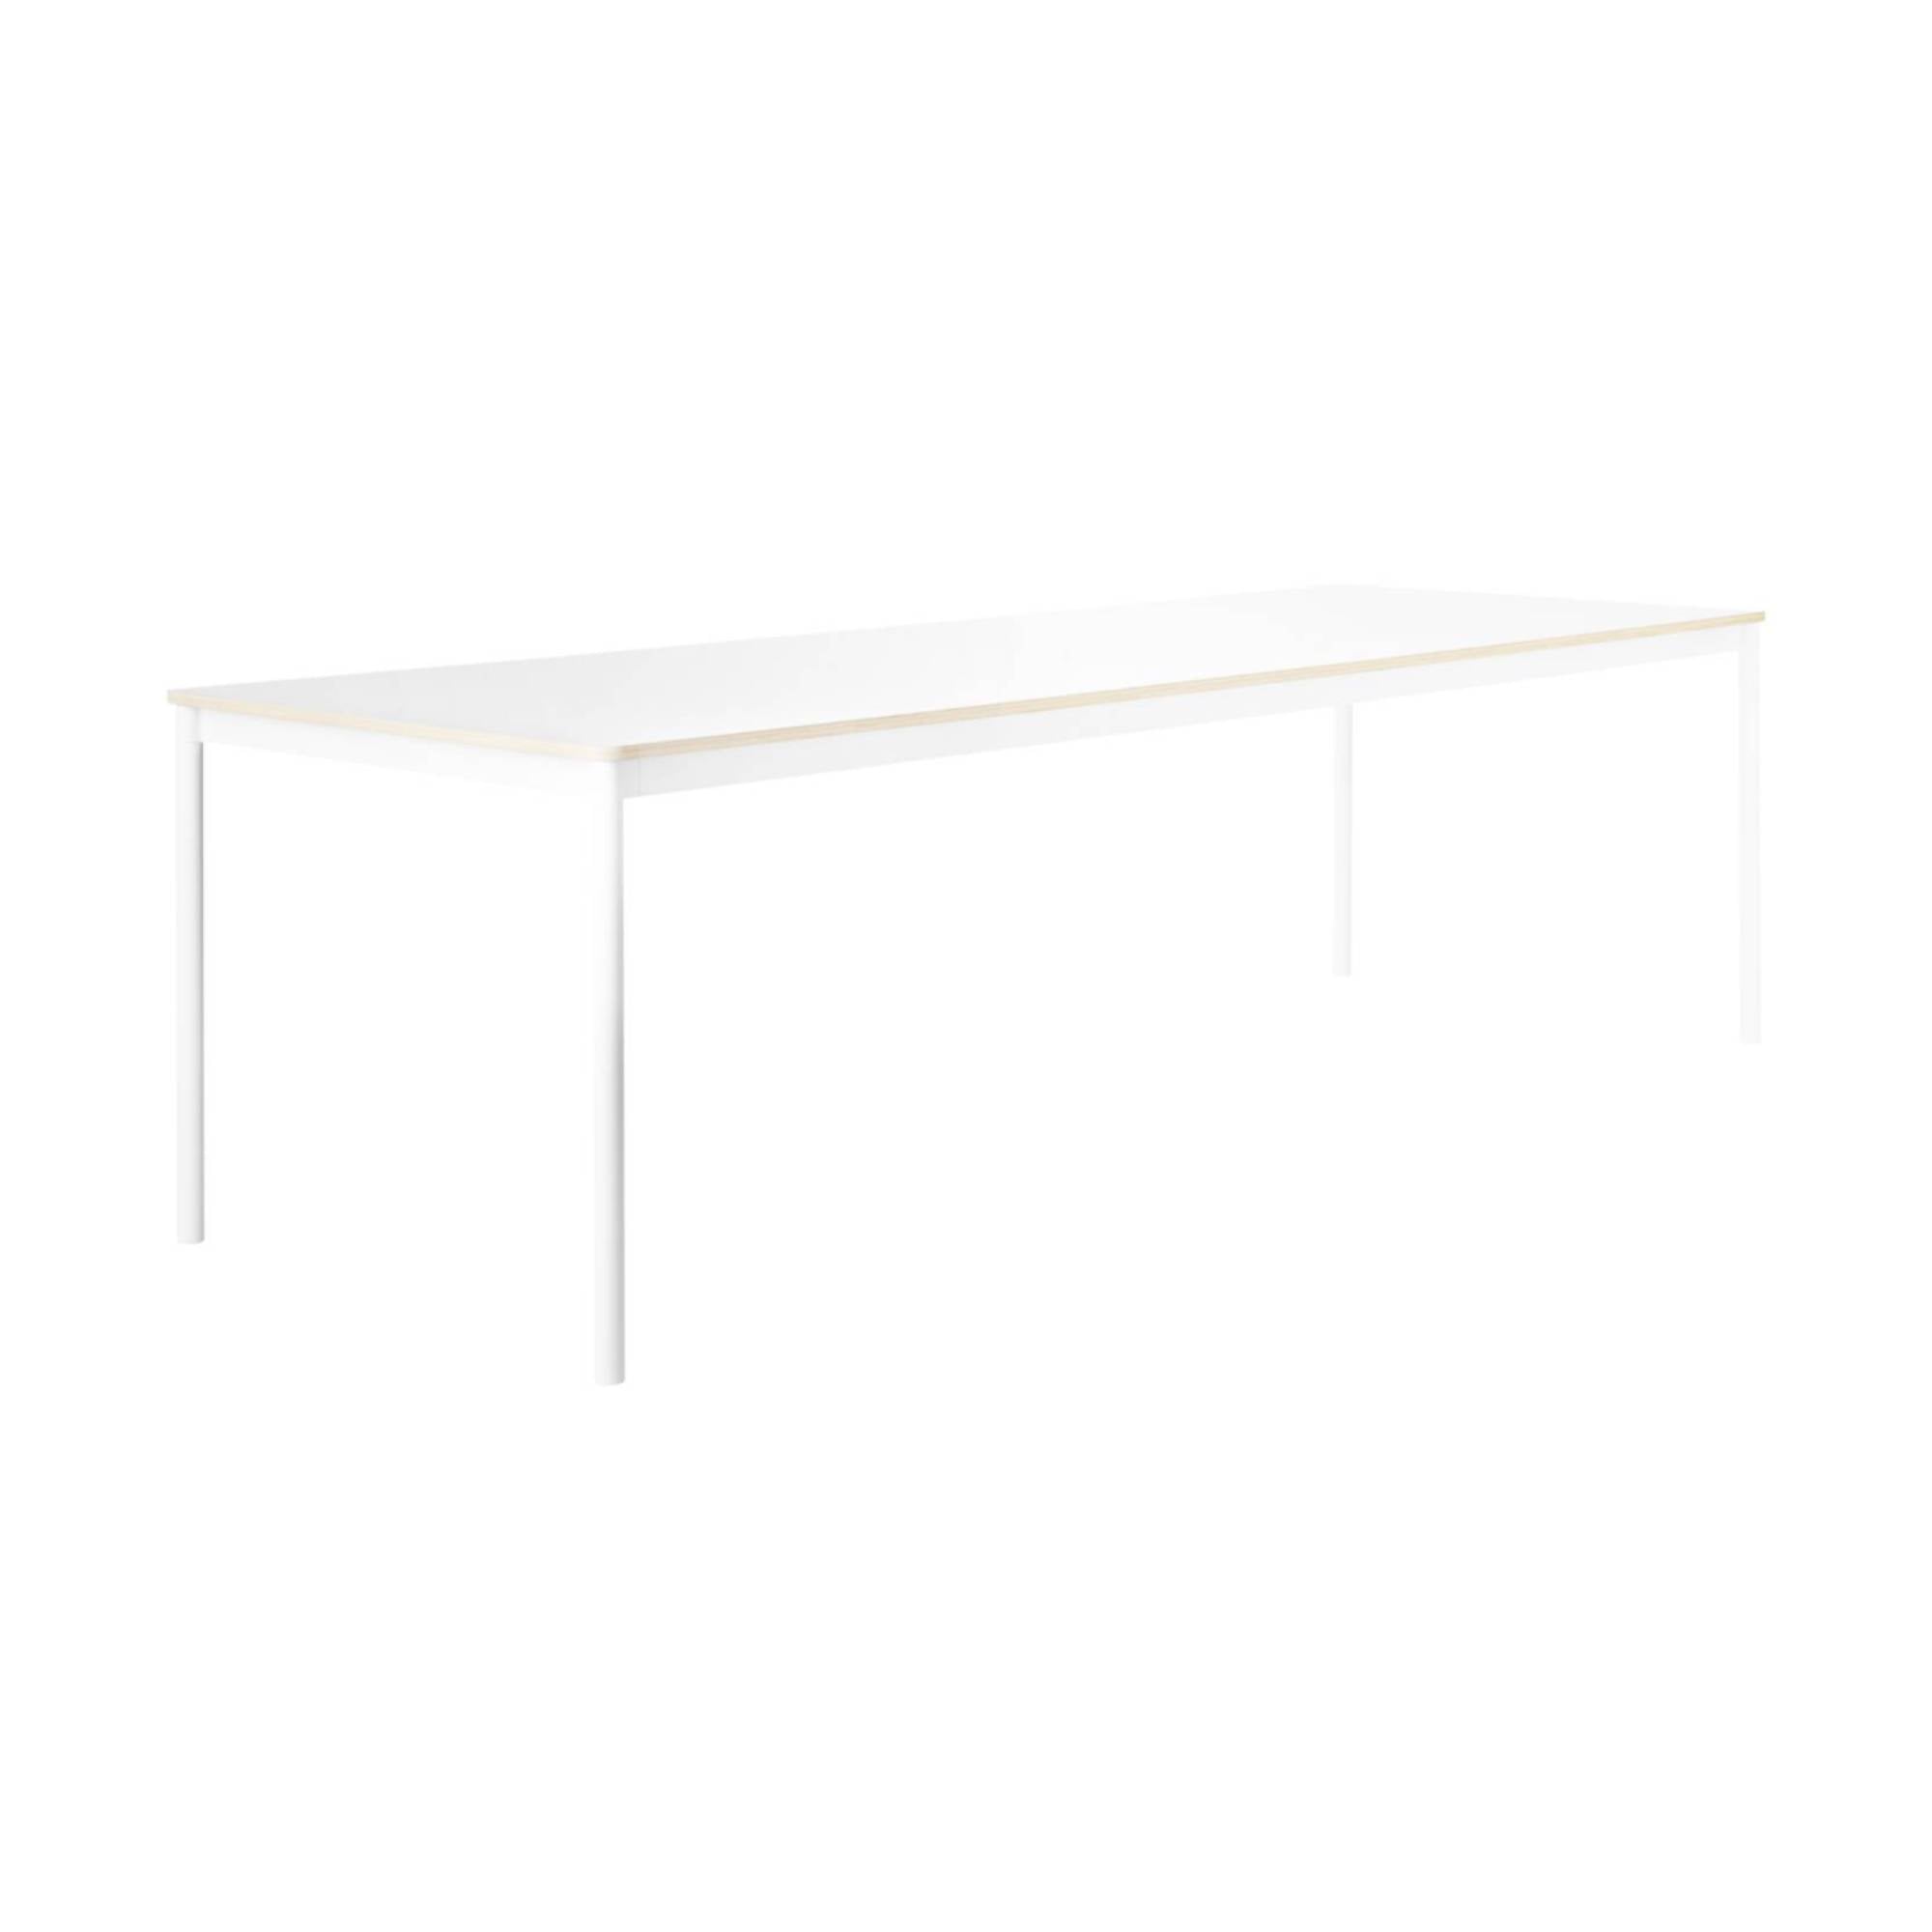 Base Table: Large + White Laminate + Plywood Edge + White